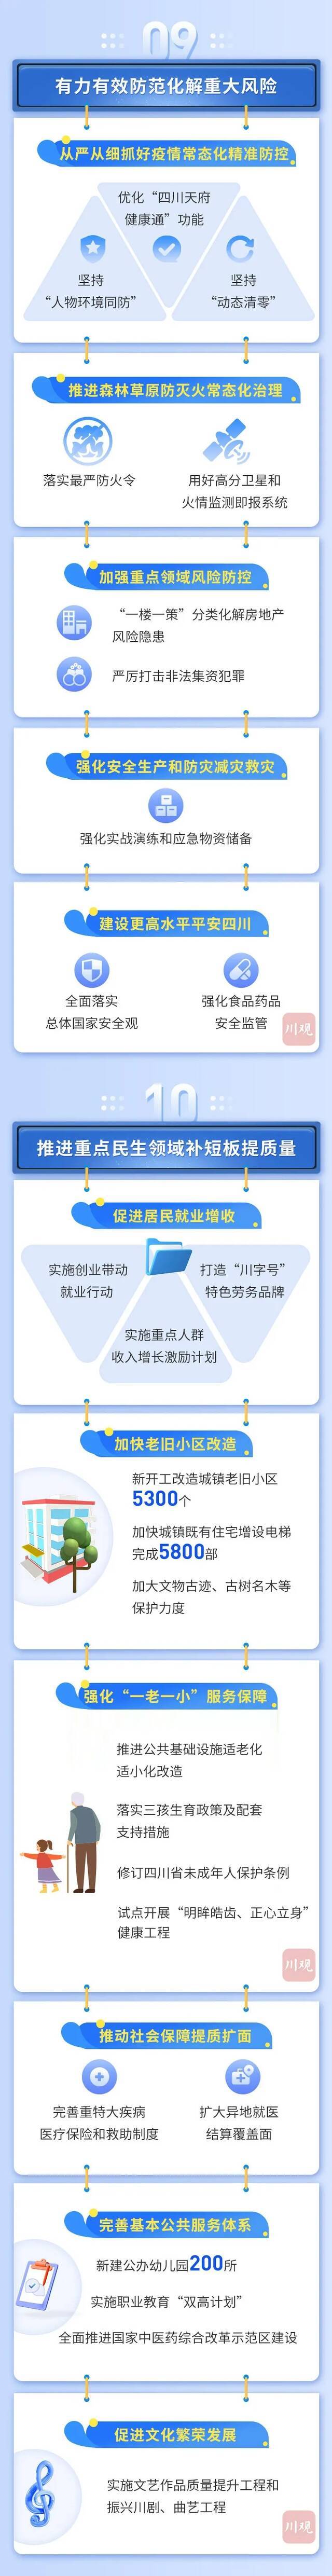 一图读懂2022年四川省政府工作报告